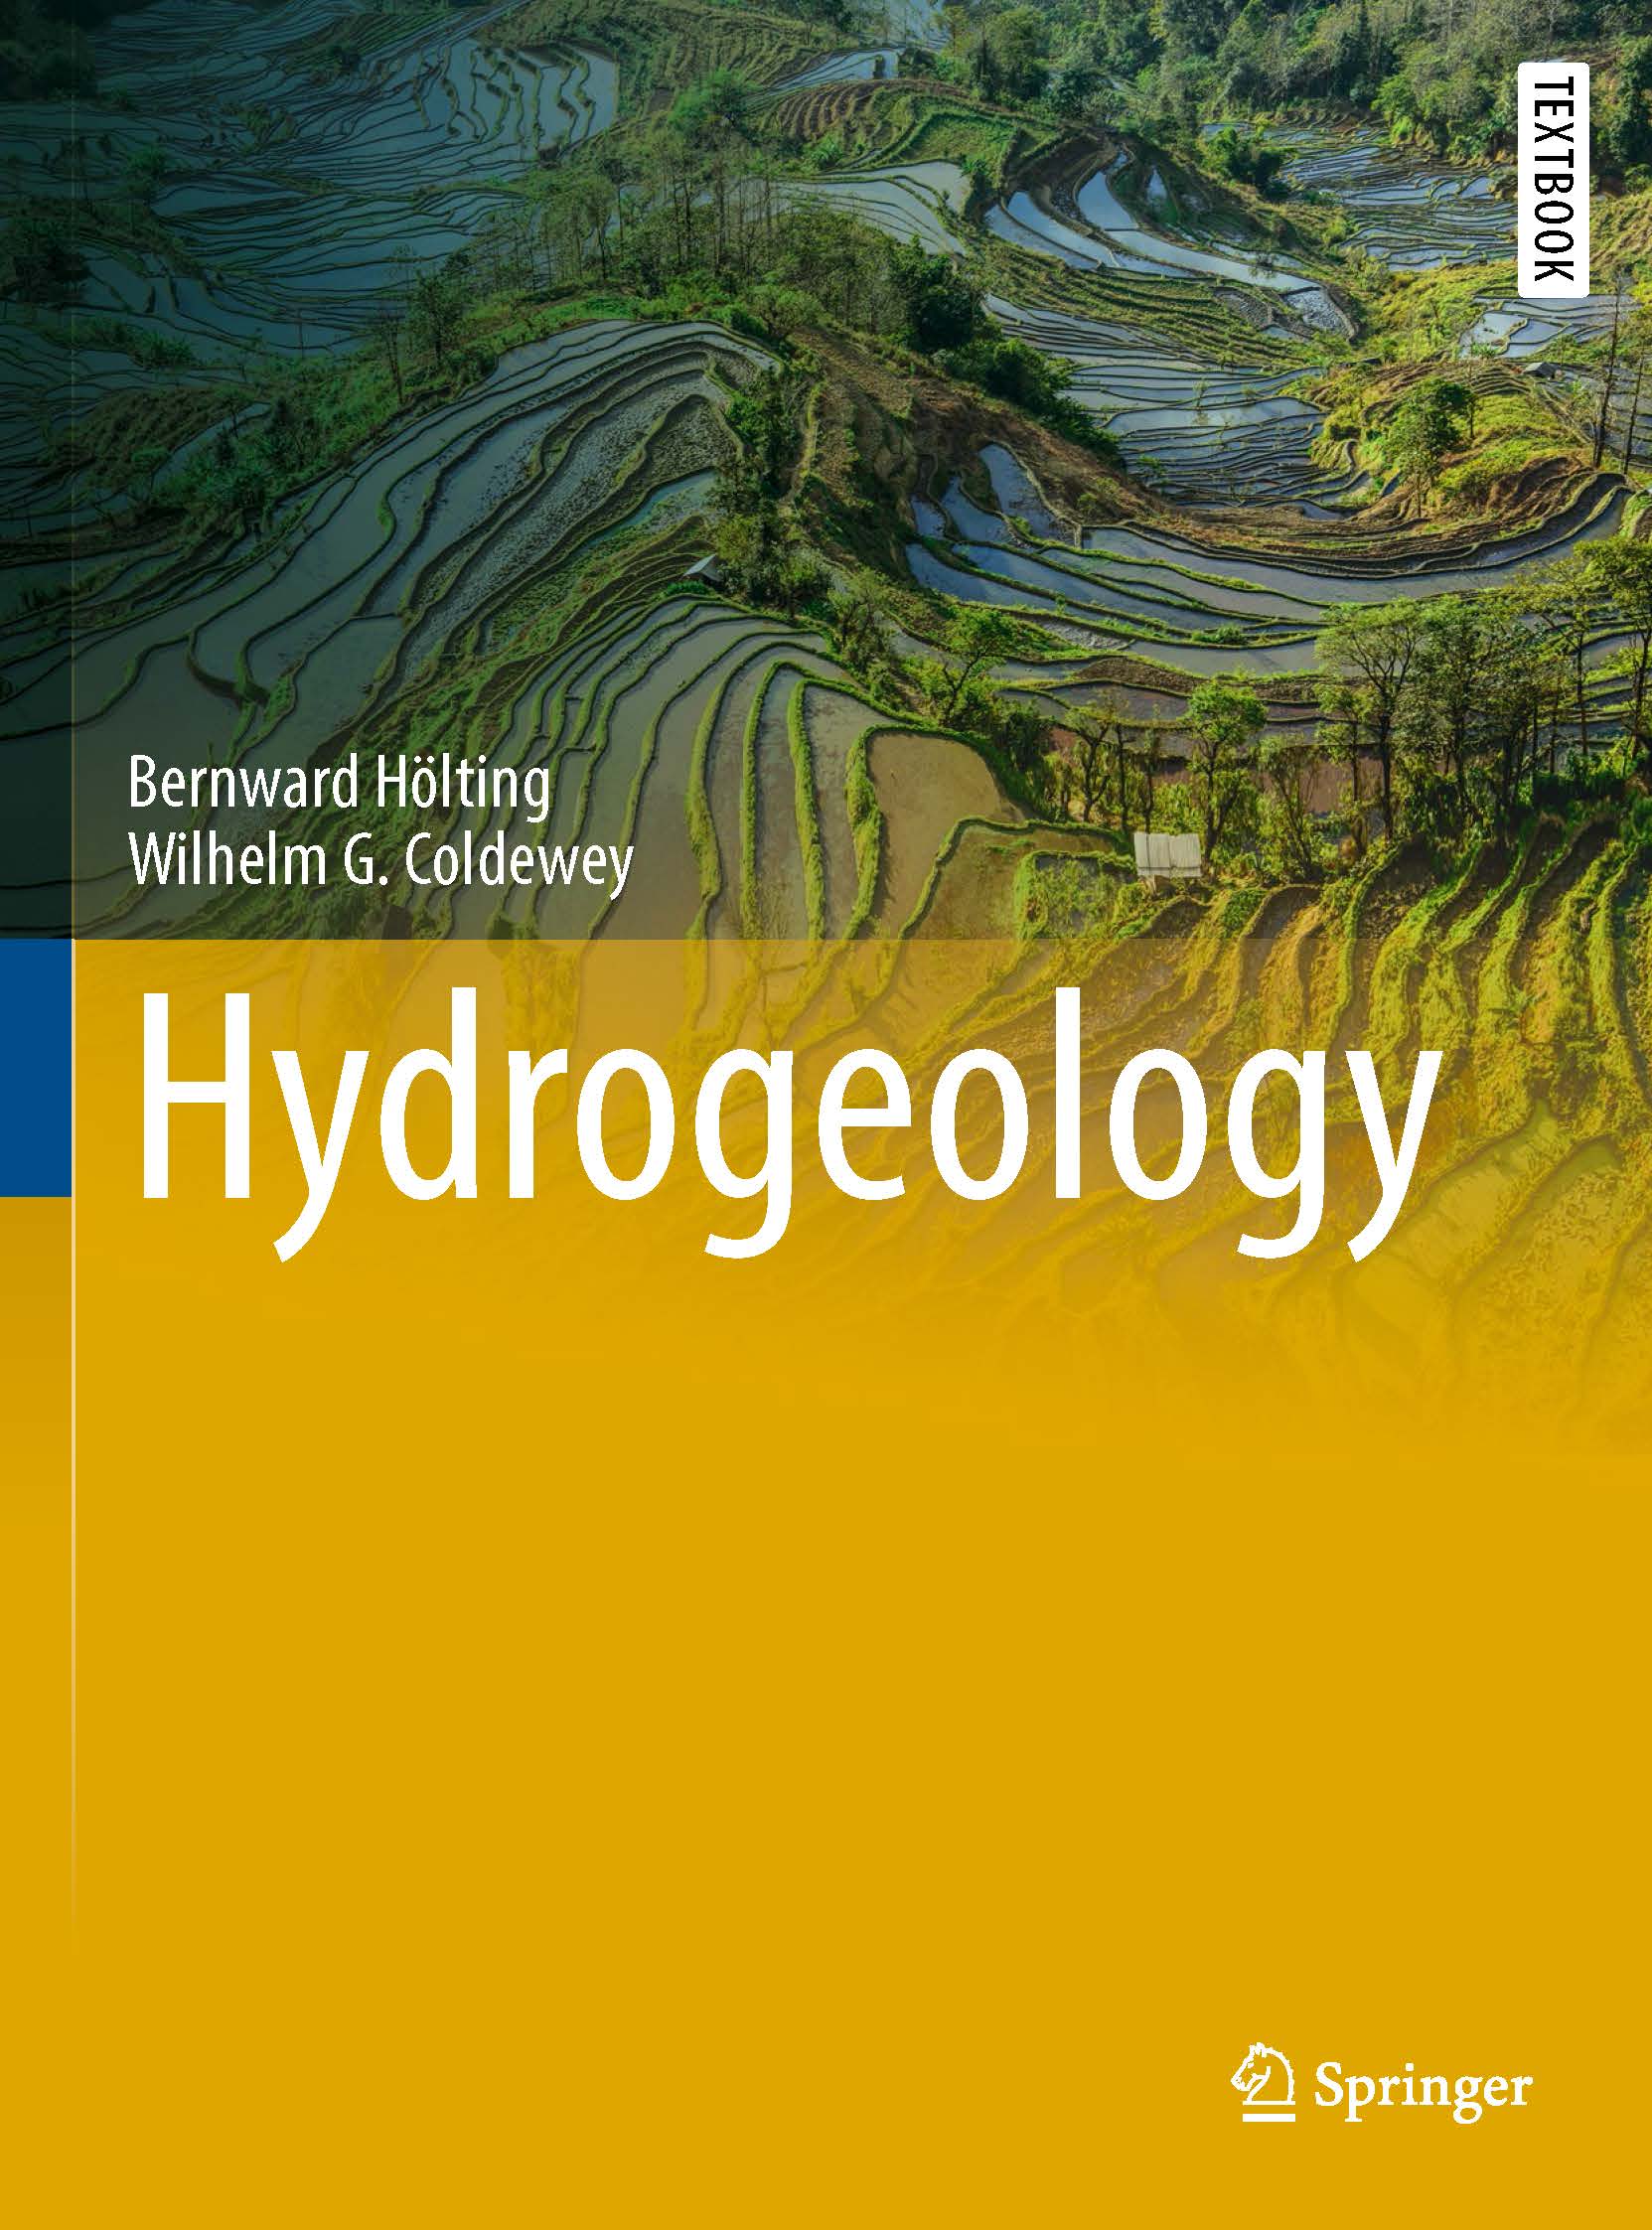 页面提取自－2019_Book_Hydrogeology.jpg